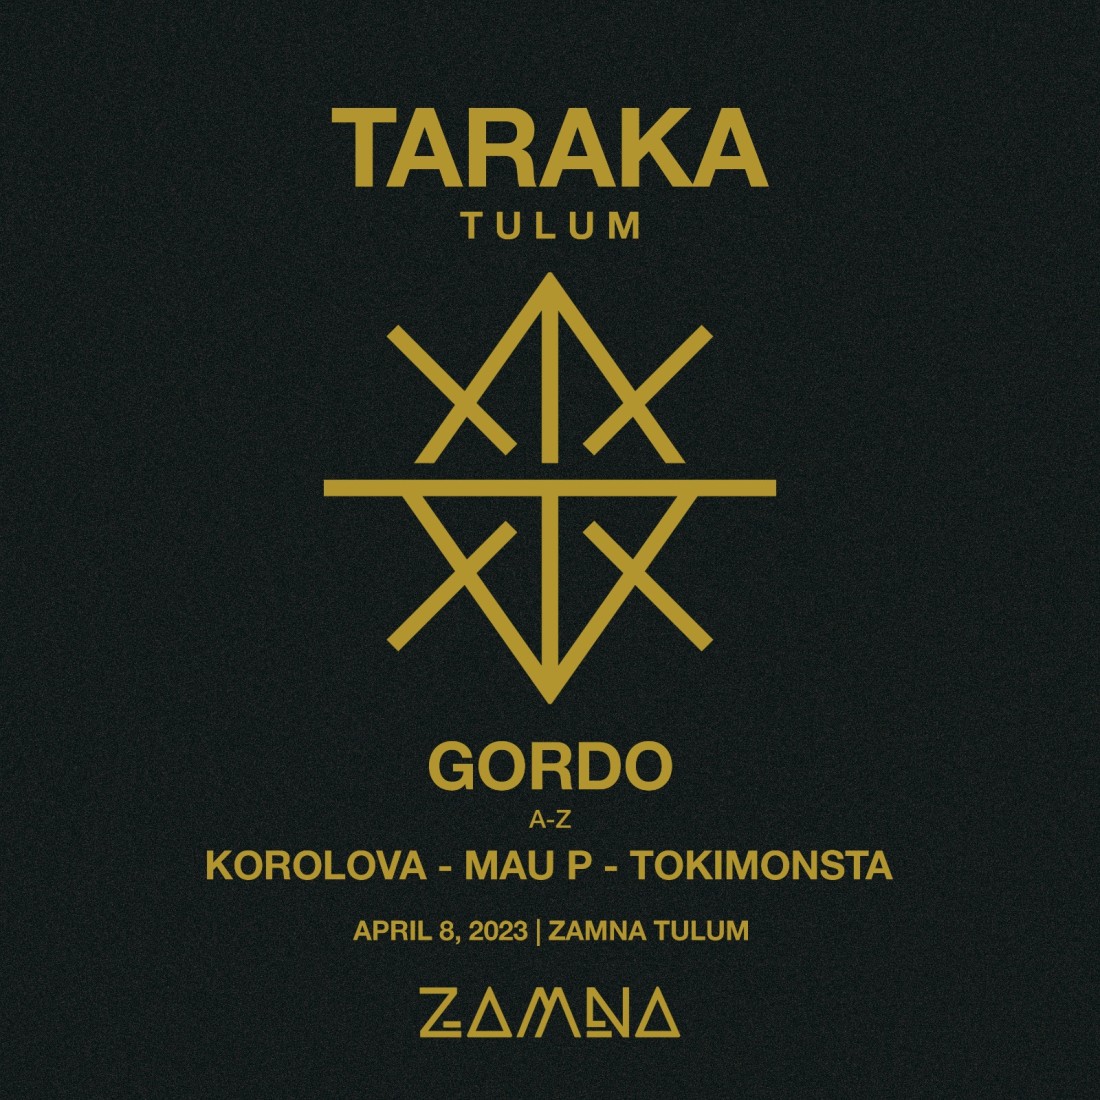 TARAKA by GORDO - Early Bird VIP